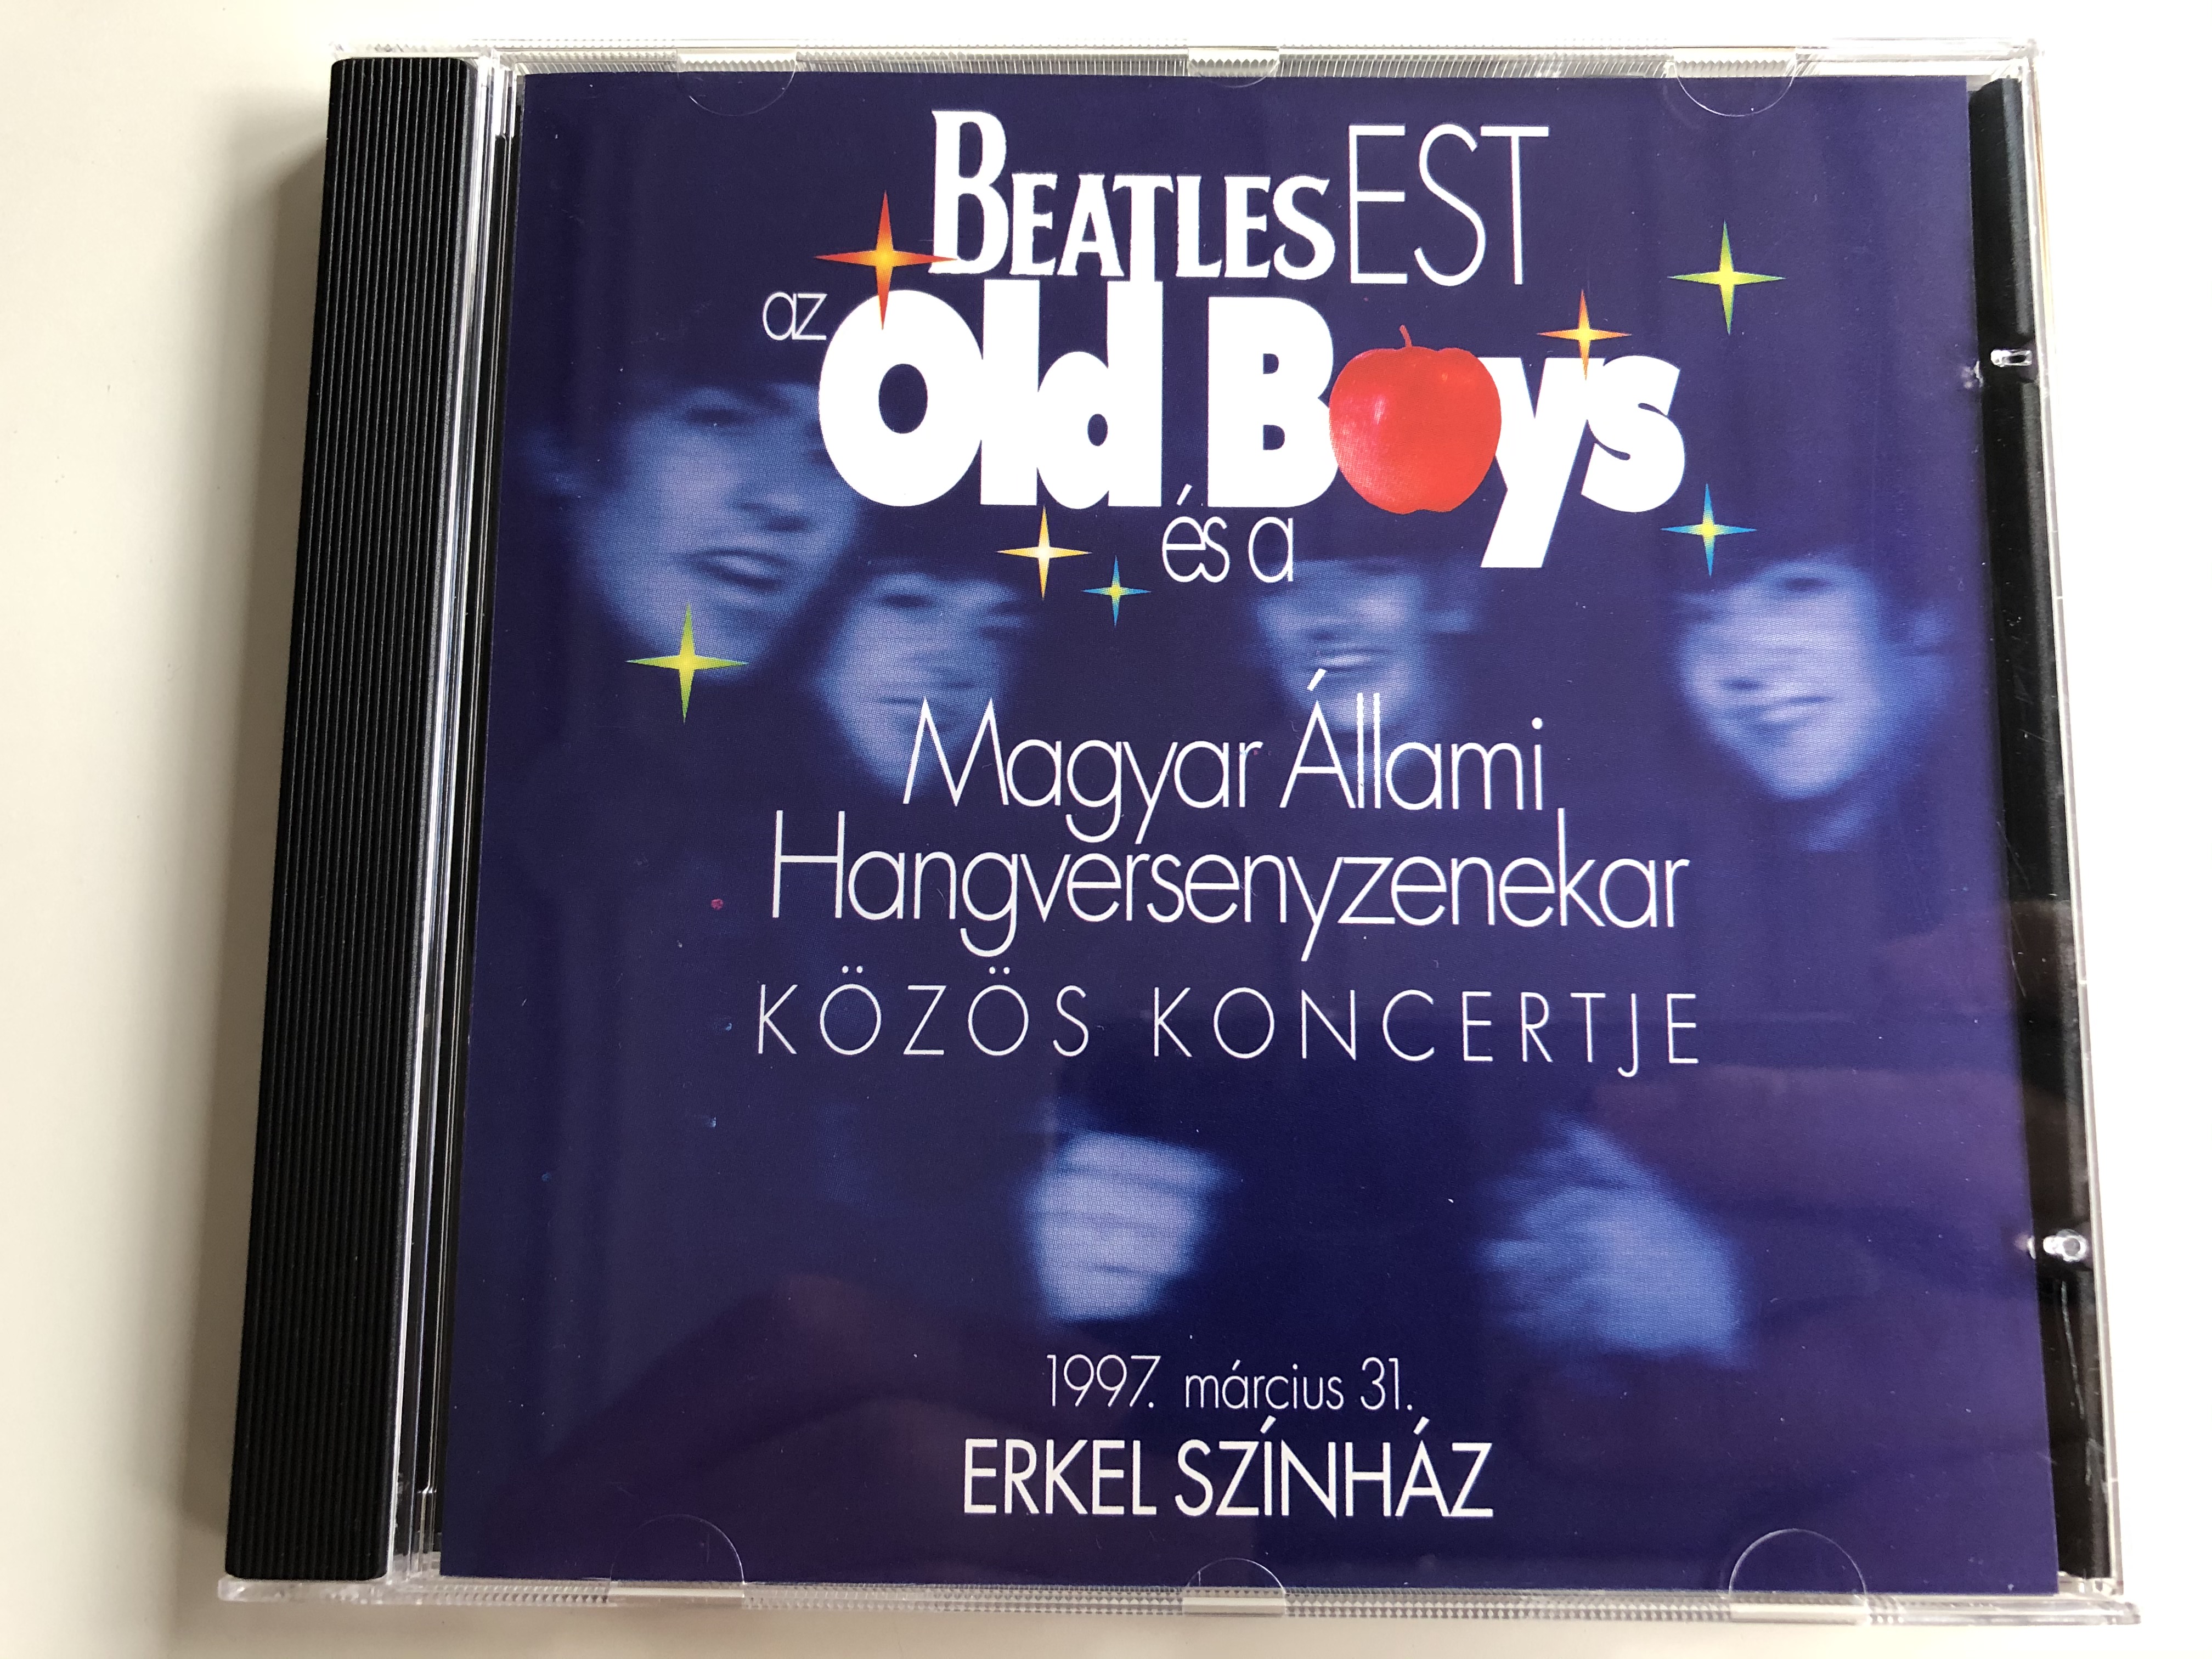 beatles-est-az-old-boys-es-a-magyar-allami-hangversenyzenekar-kozos-koncertje-1997.-marcius-31.-erkel-szinhaz-audio-cd-1997-cp-hu-aa2-3005-1-.jpg